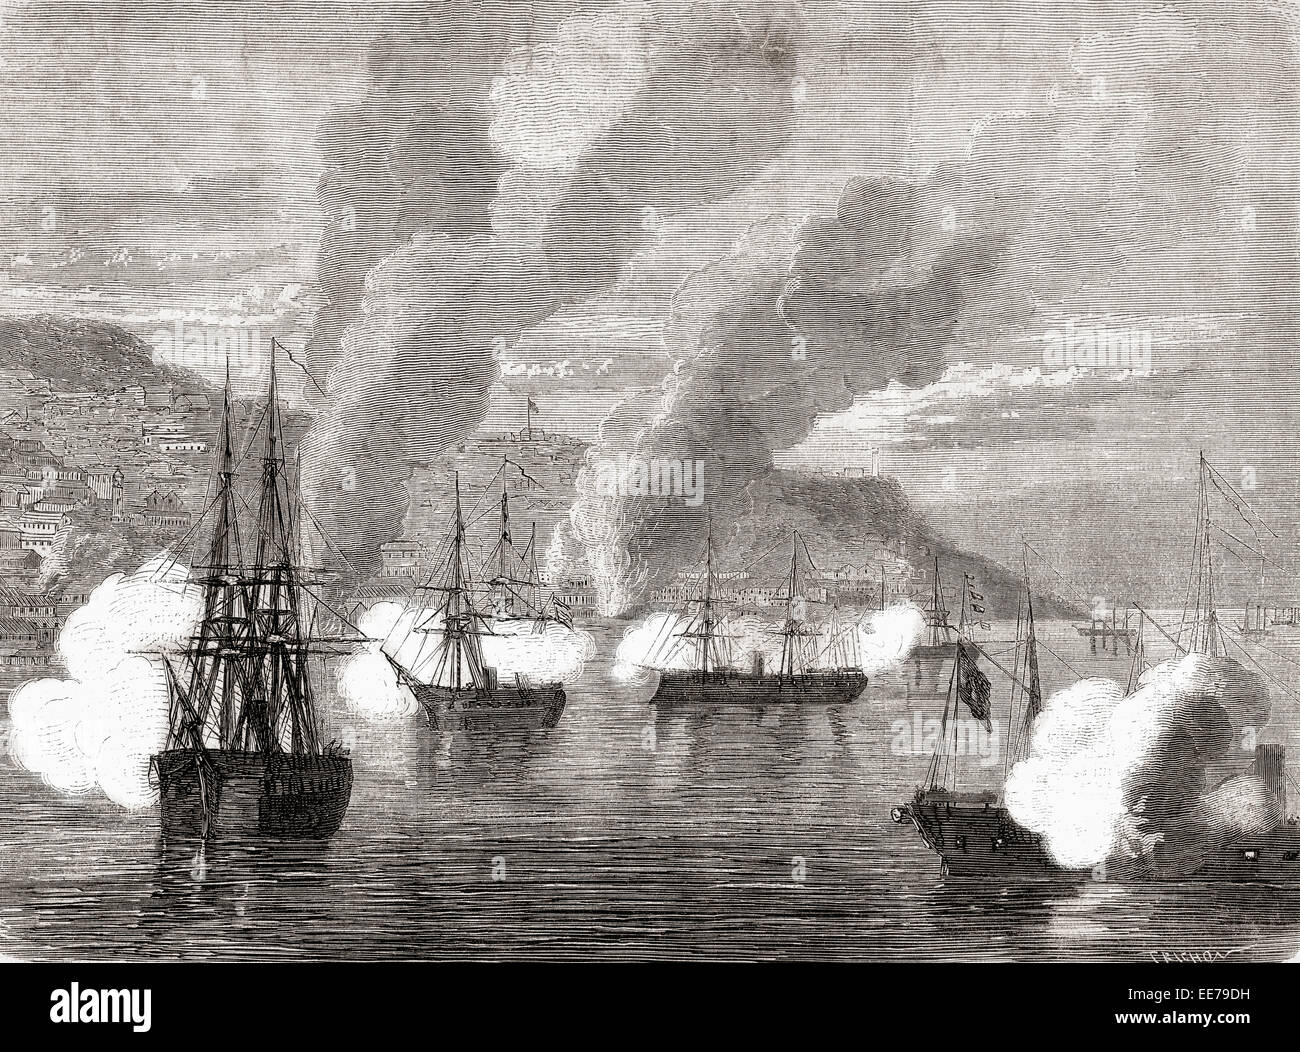 Die Bombardierung von Valparaiso am 31. März 1866 durch eine spanische Flotte beschossen, verbrannt und zerstört die unverteidigten Hafen von Valparaiso, Chile, Südamerika. Stockfoto